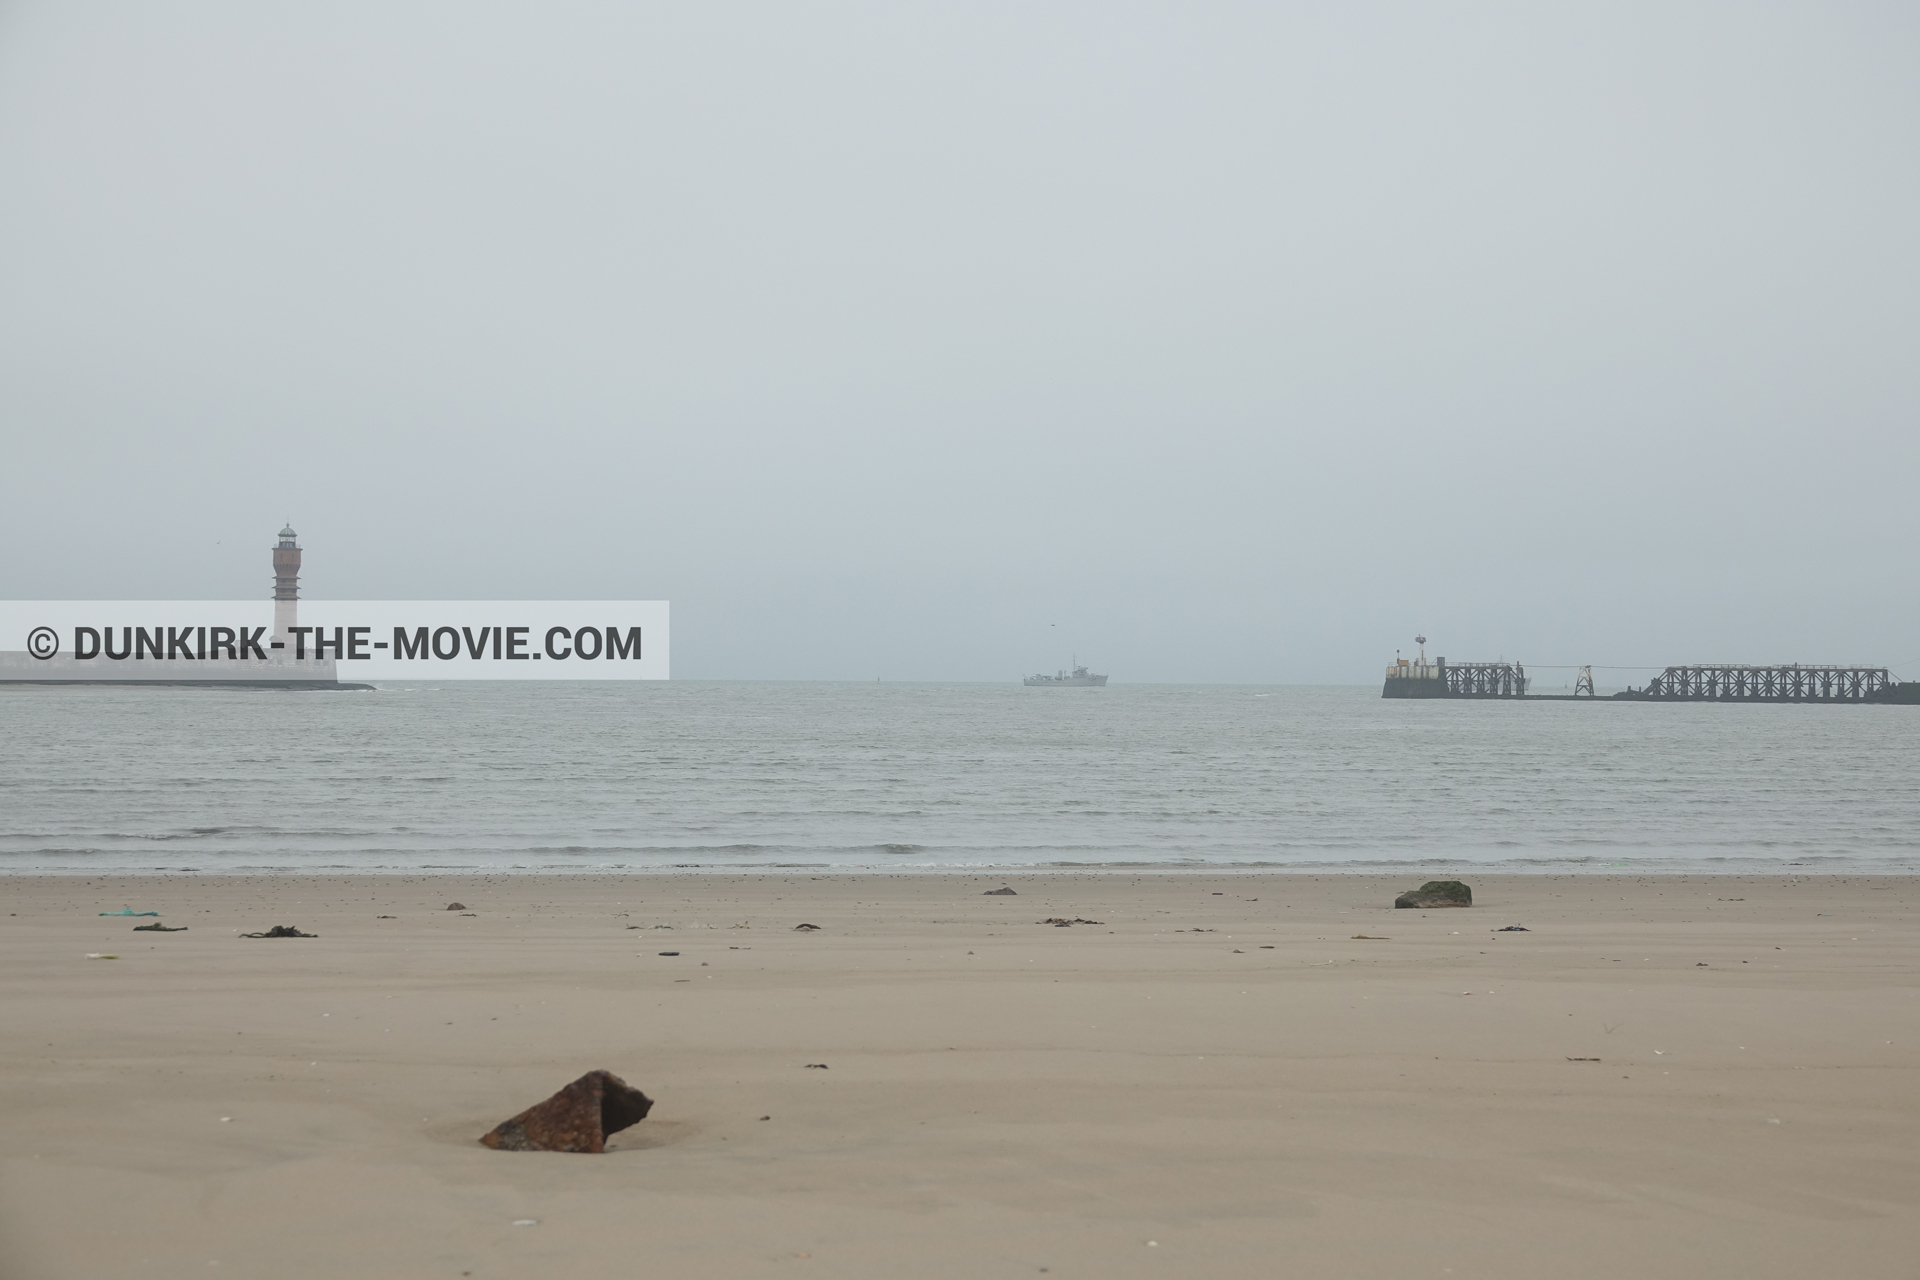 Fotos con barco, cielo gris, mares calma, faro de Saint-Pol-sur-Mer, playa,  durante el rodaje de la película Dunkerque de Nolan